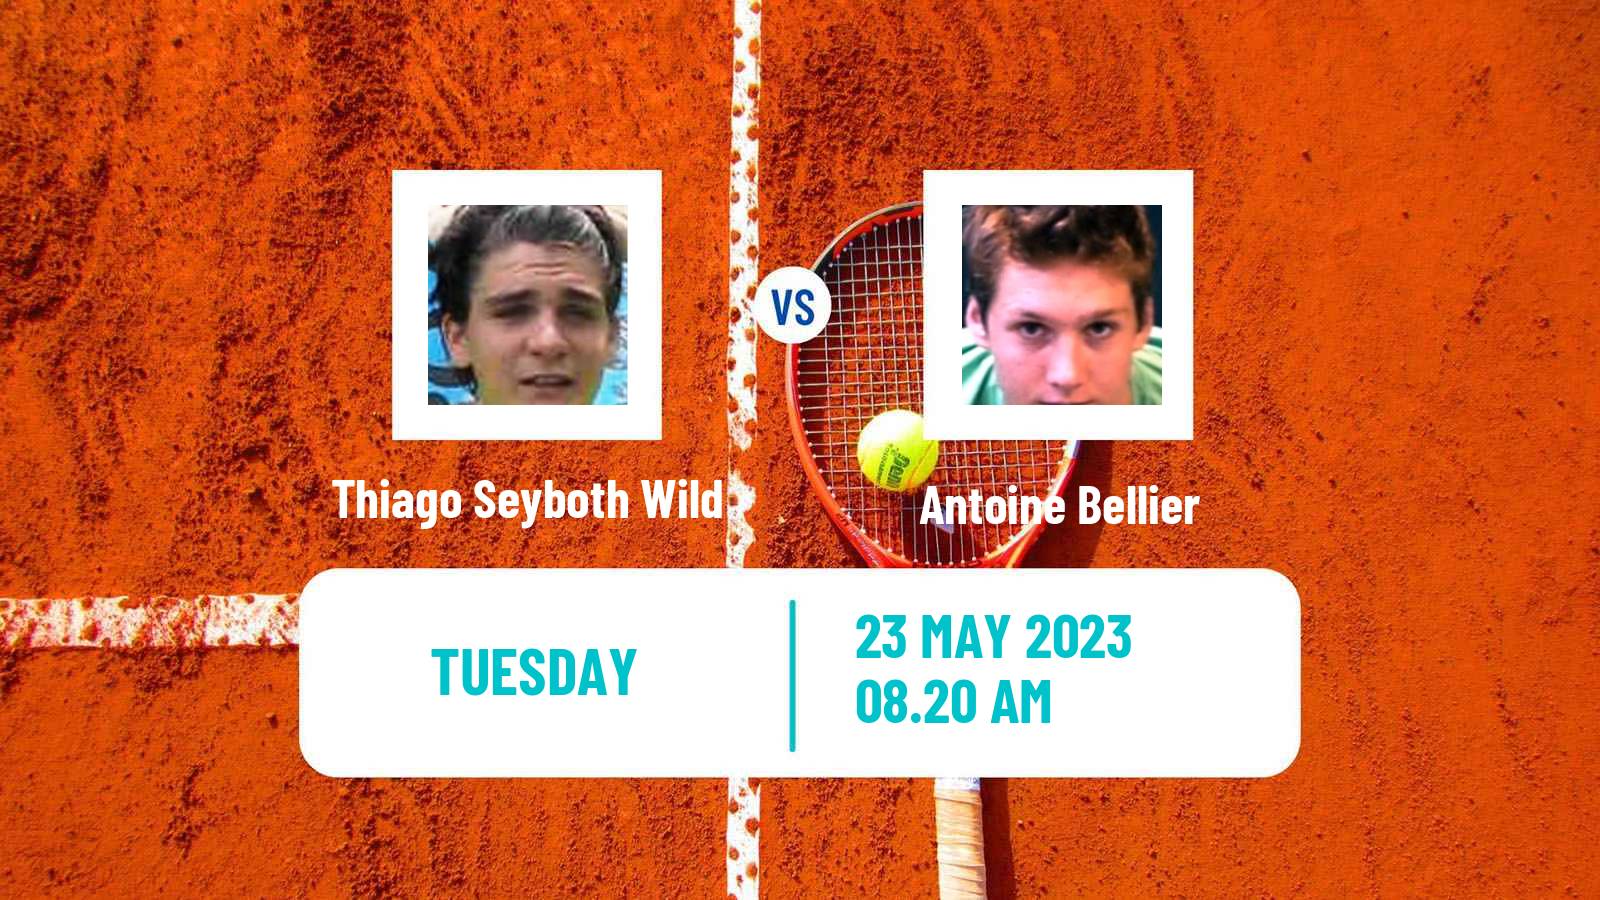 Tennis ATP Roland Garros Thiago Seyboth Wild - Antoine Bellier